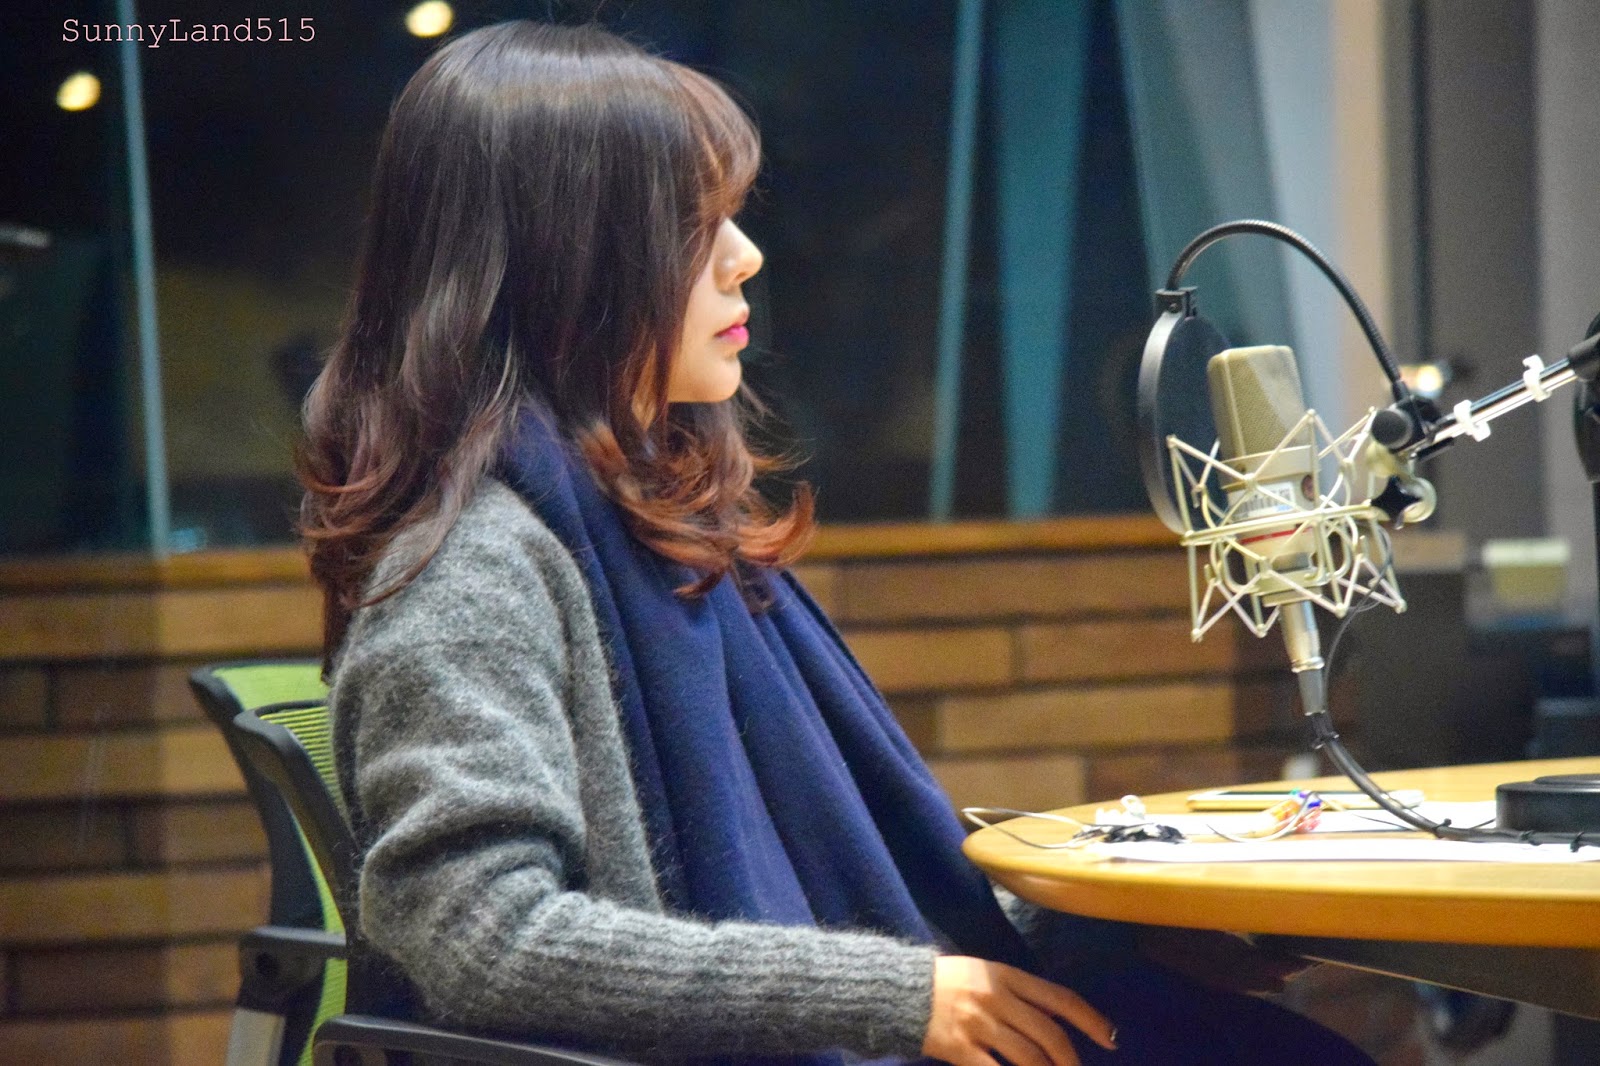 [OTHER][06-02-2015]Hình ảnh mới nhất từ DJ Sunny tại Radio MBC FM4U - "FM Date" - Page 10 DSC_0197_Fotor